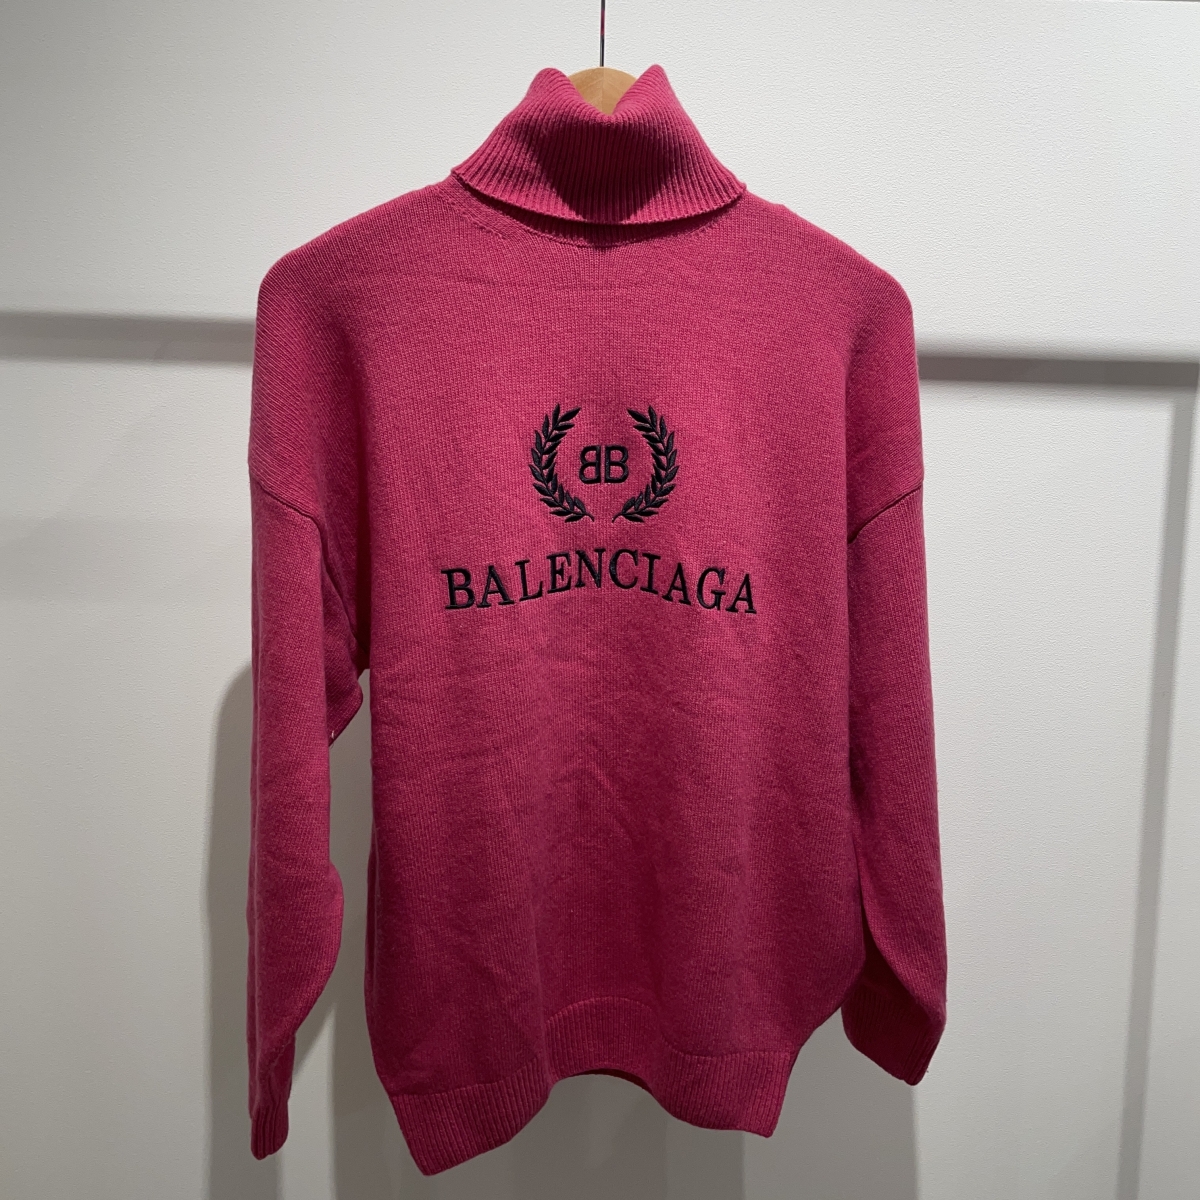 バレンシアガの542618 T4081 ピンク タートルネック ニットセーターの買取実績です。